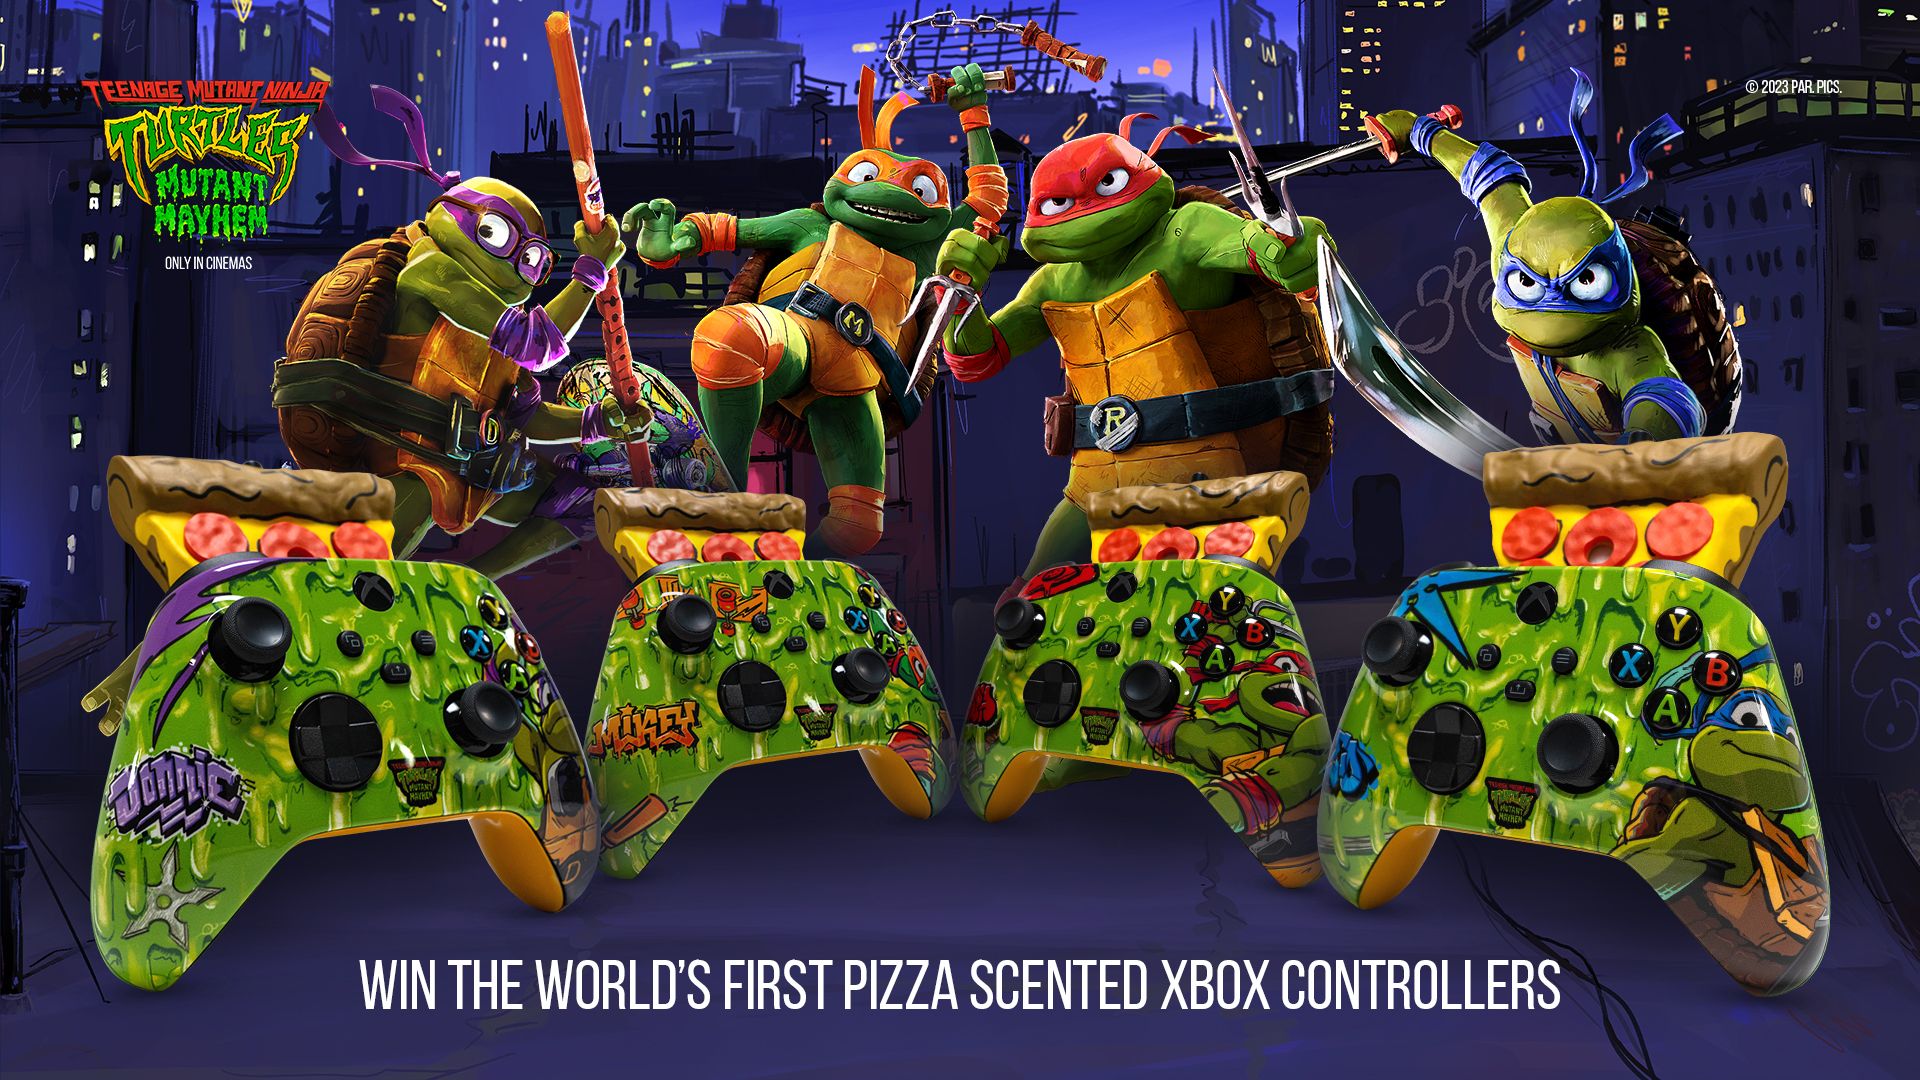 Ninja Turtles werden es lieben: Microsoft hat eine ungewöhnliche, nach Pizza duftende Xbox enthüllt